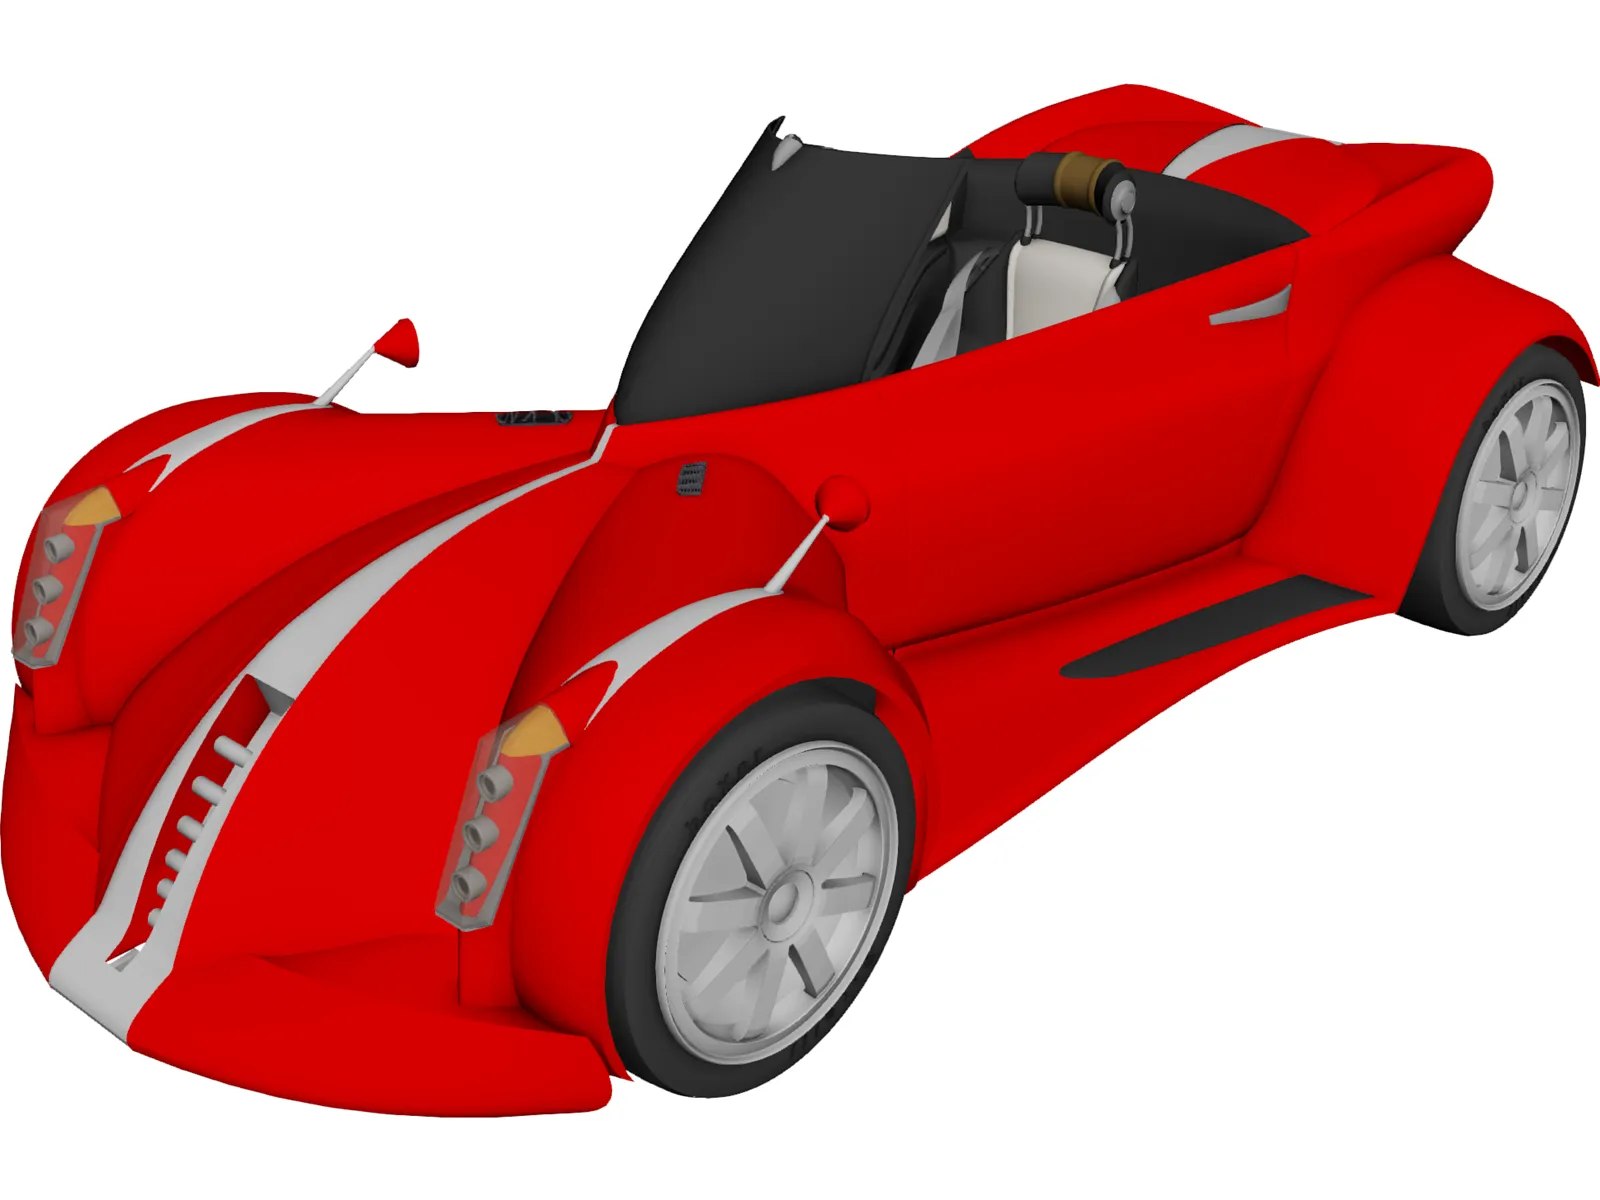 Boxer Concept Car 3D Model